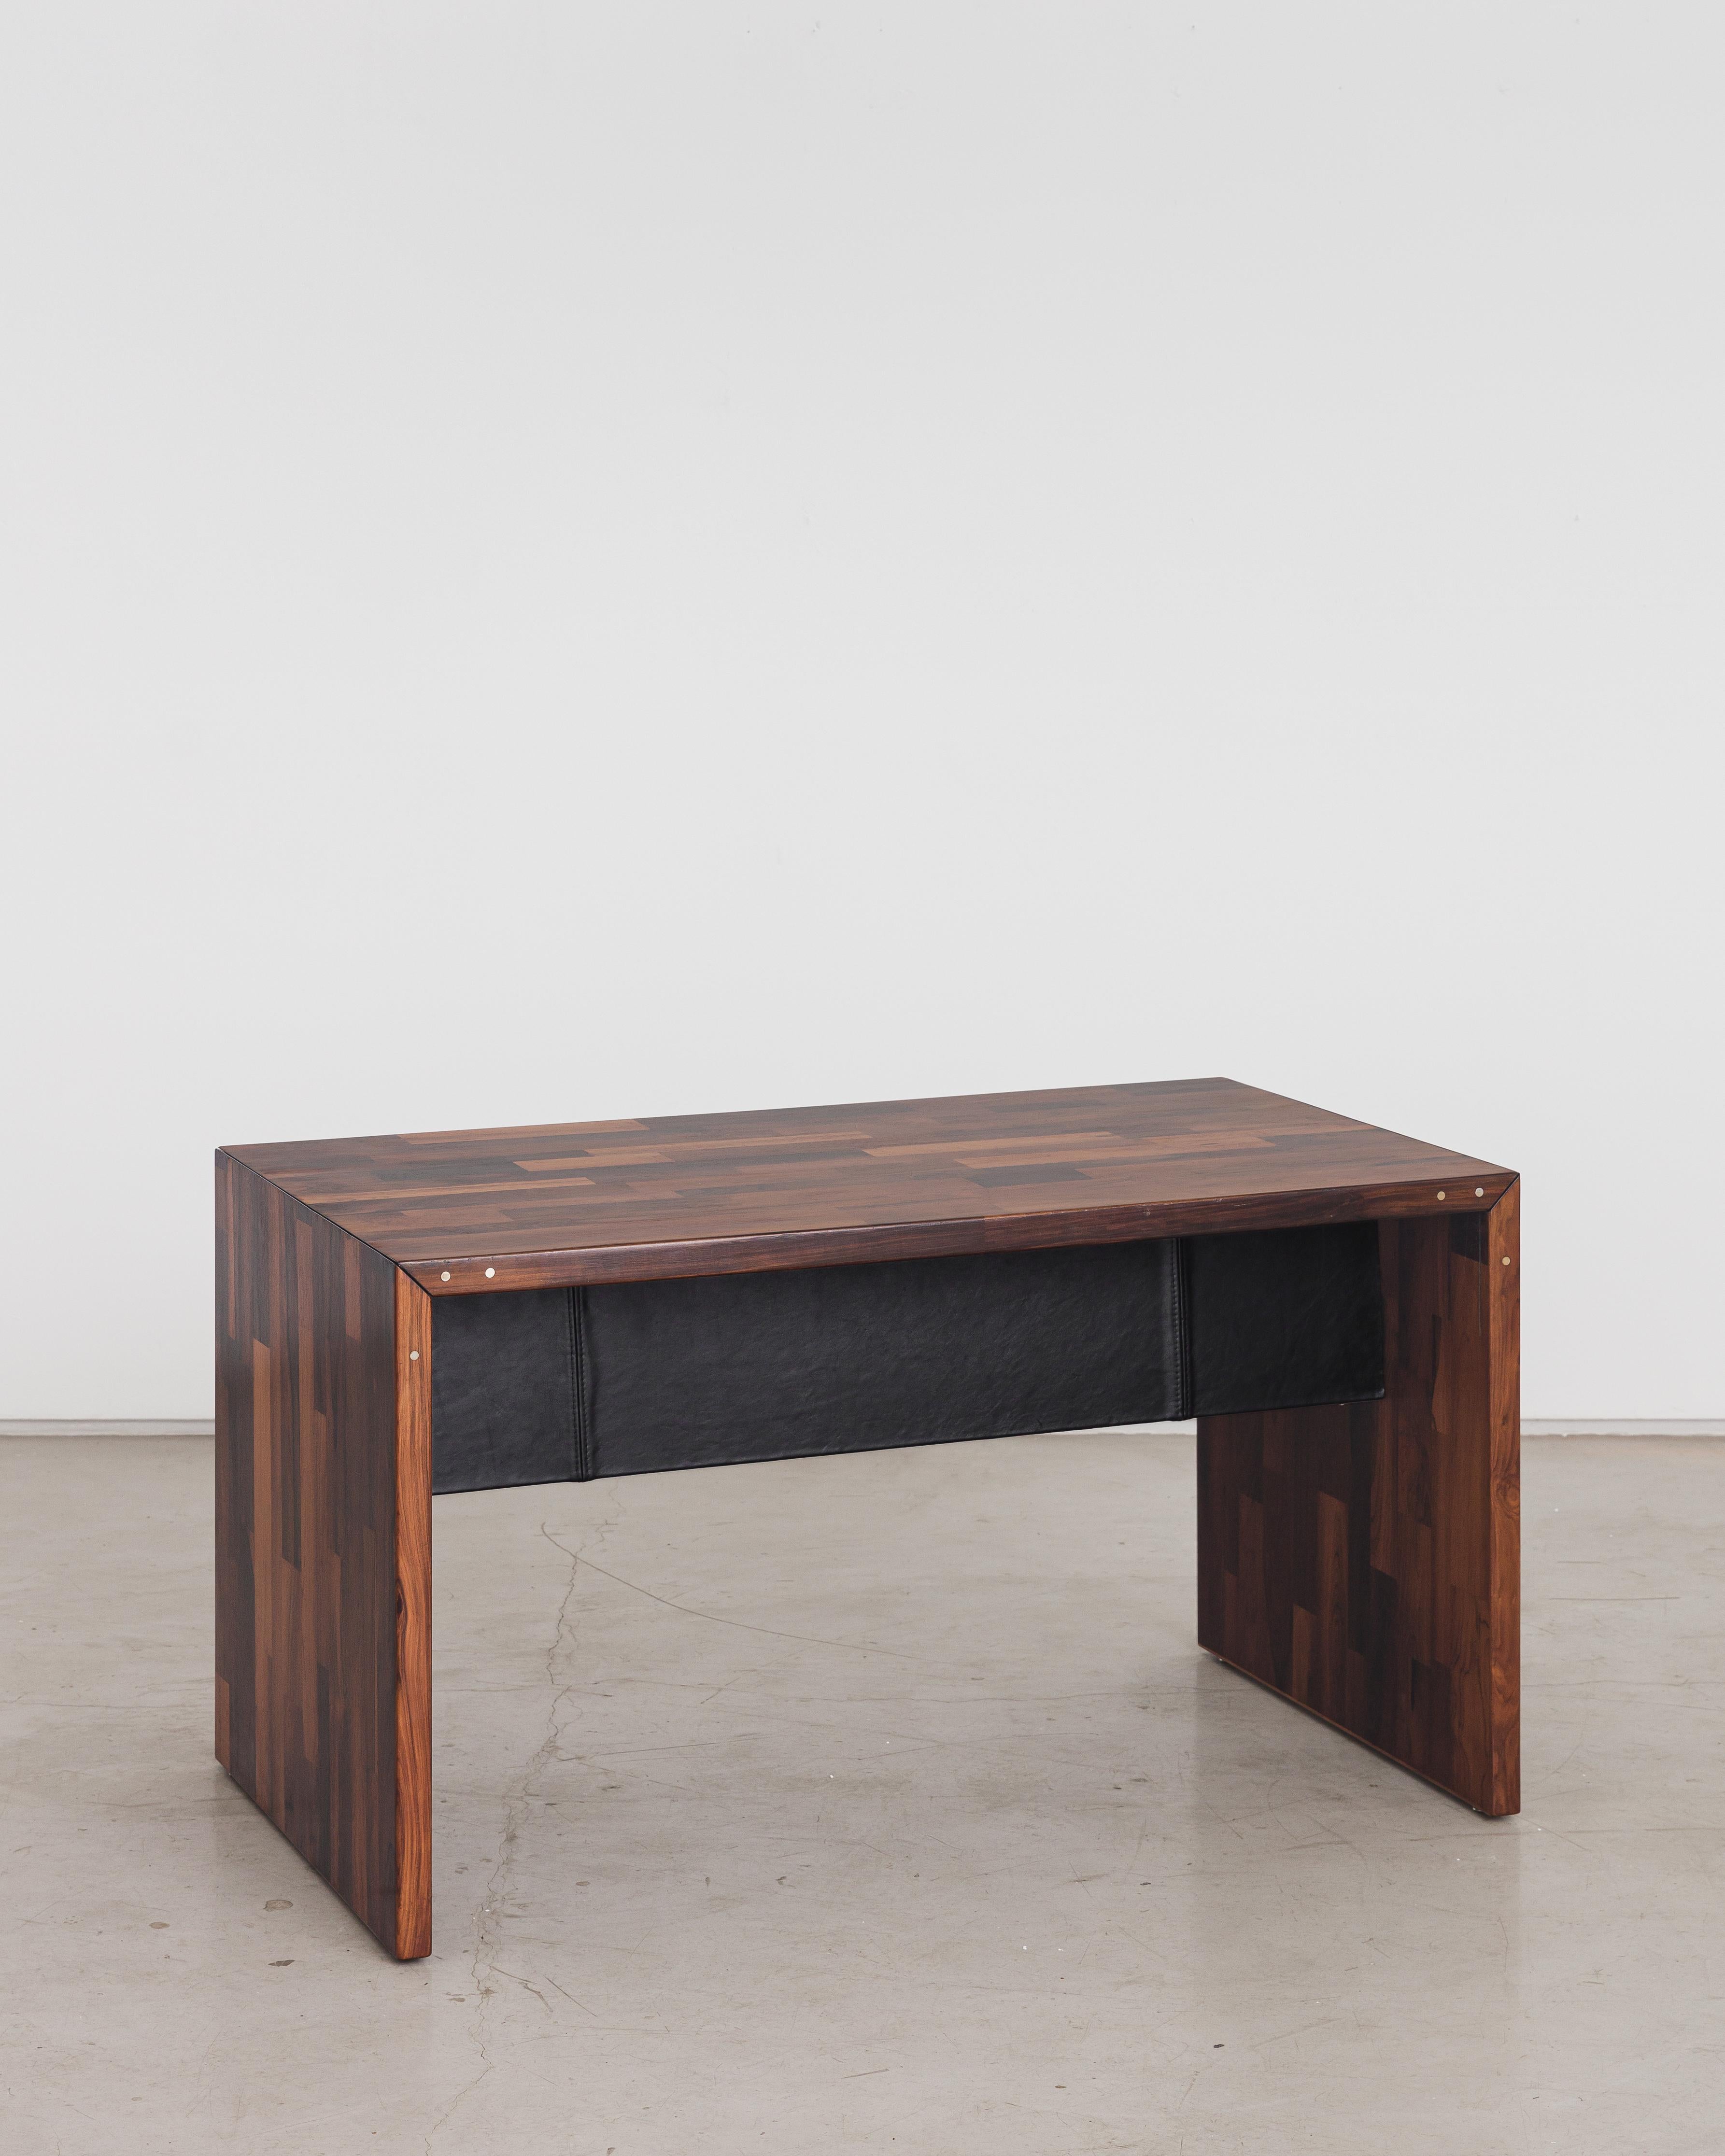 Schreibtisch, entworfen von Jorge Zalszupin und hergestellt von seinem Unternehmen L'Atelier. Dieses Stück ist mit rechteckigen Stücken aus Intarsienholz verkleidet, einer von Zalszupin entwickelten kreativen Ressource. Bei dieser Technik werden